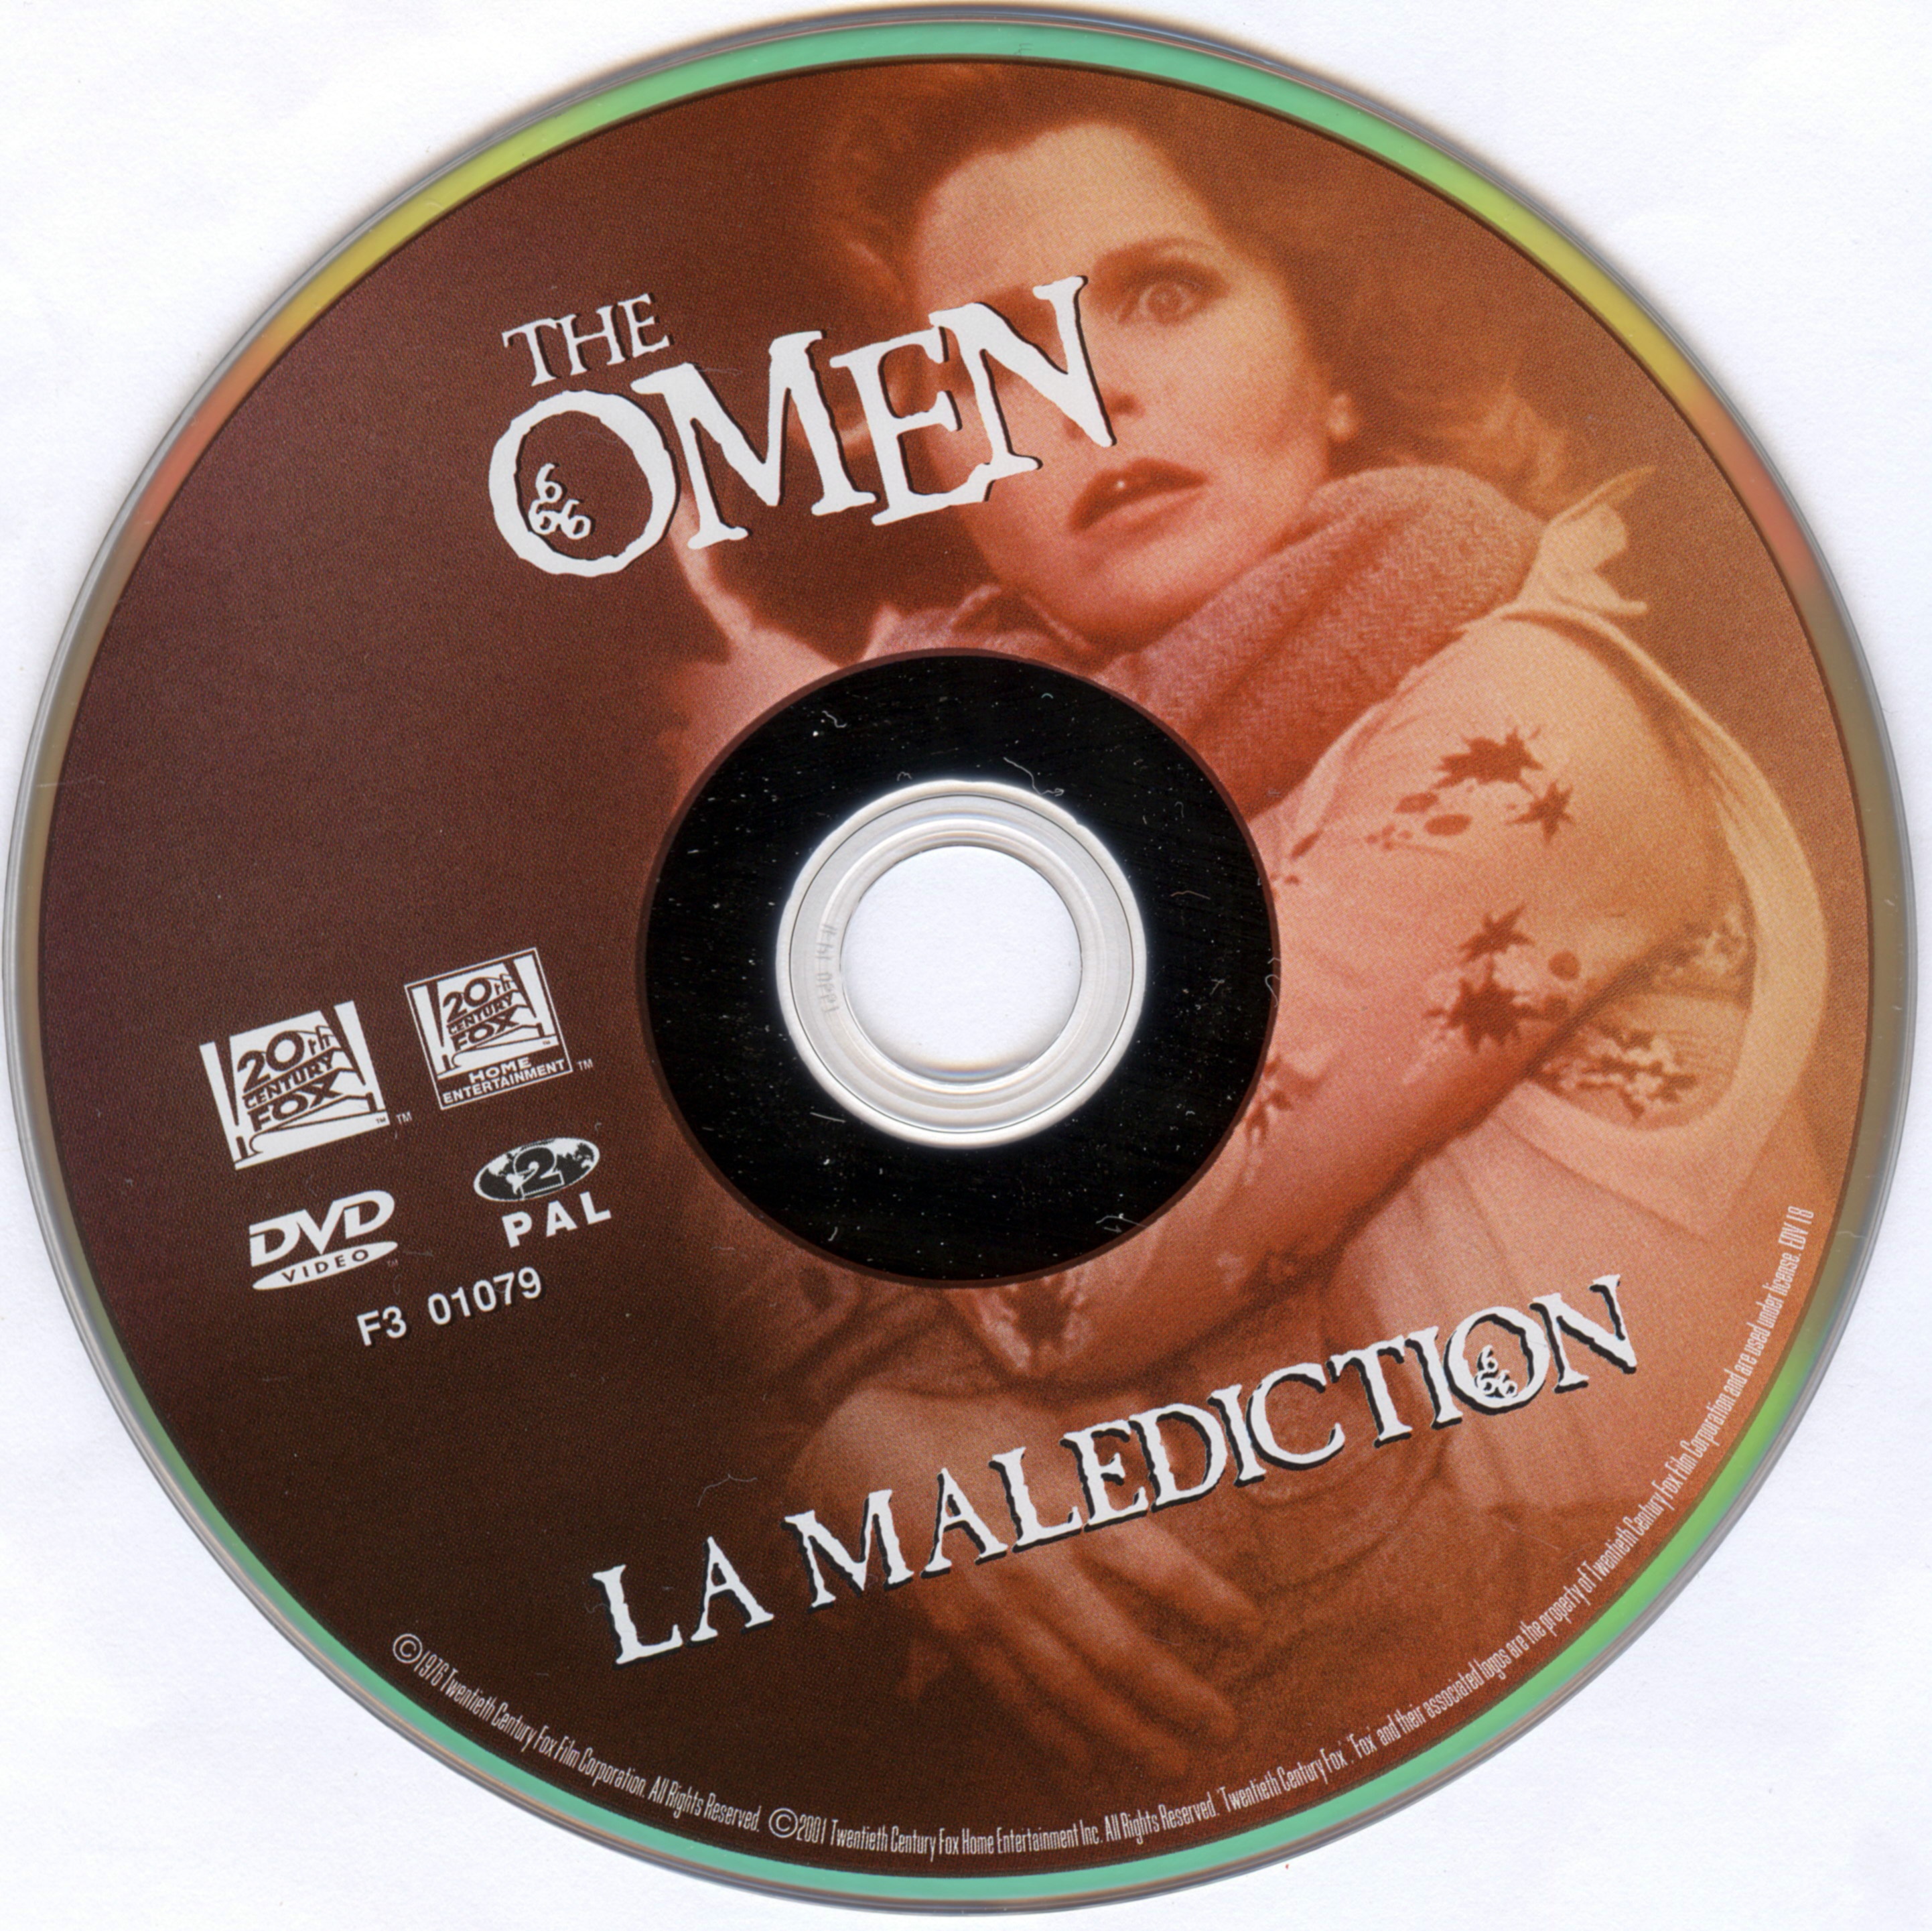 The omen - La maldiction